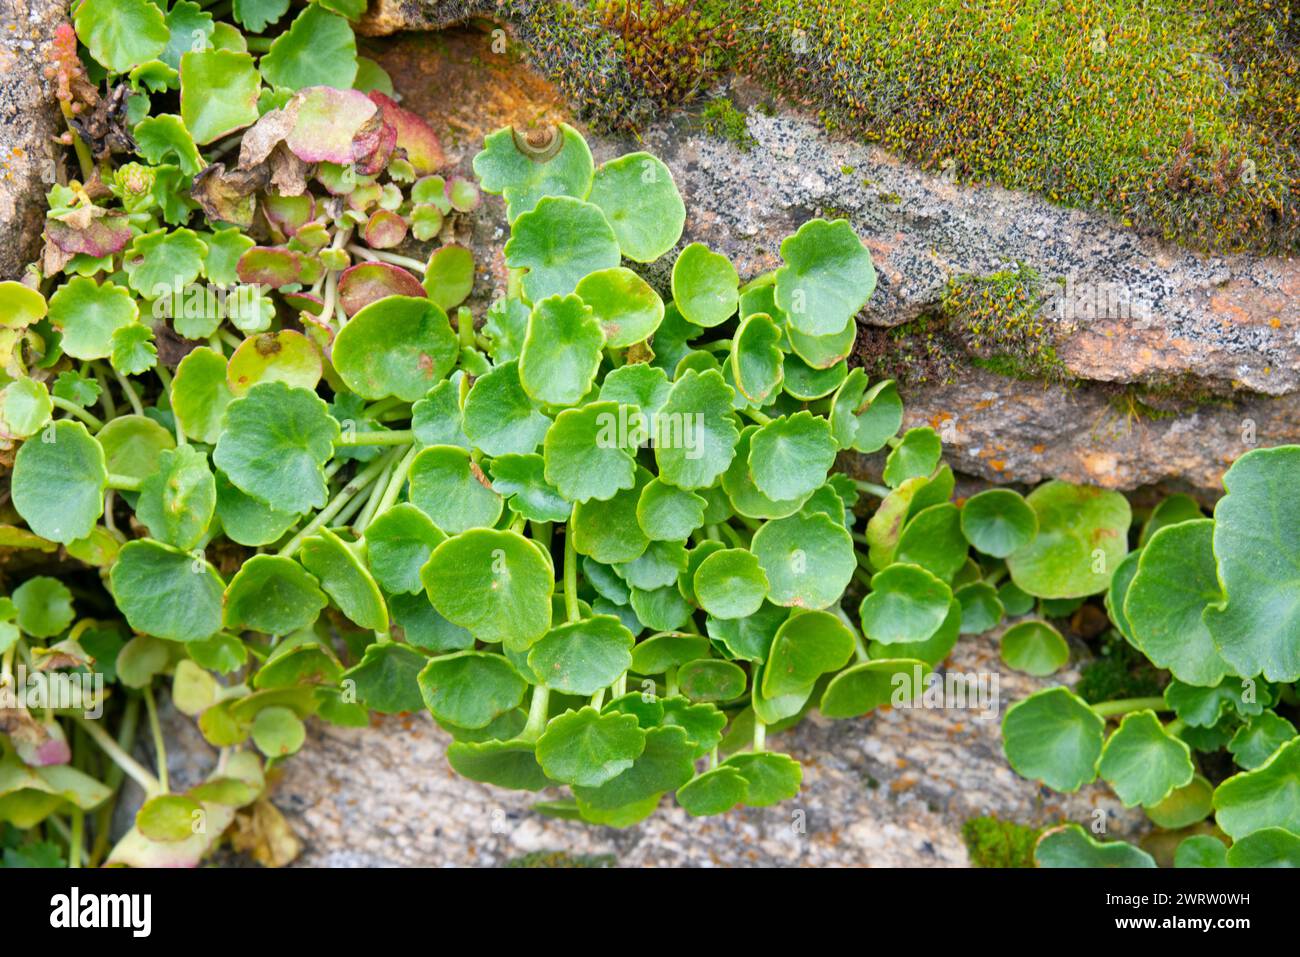 Umbilicus rupestris plant in a stone. Stock Photo